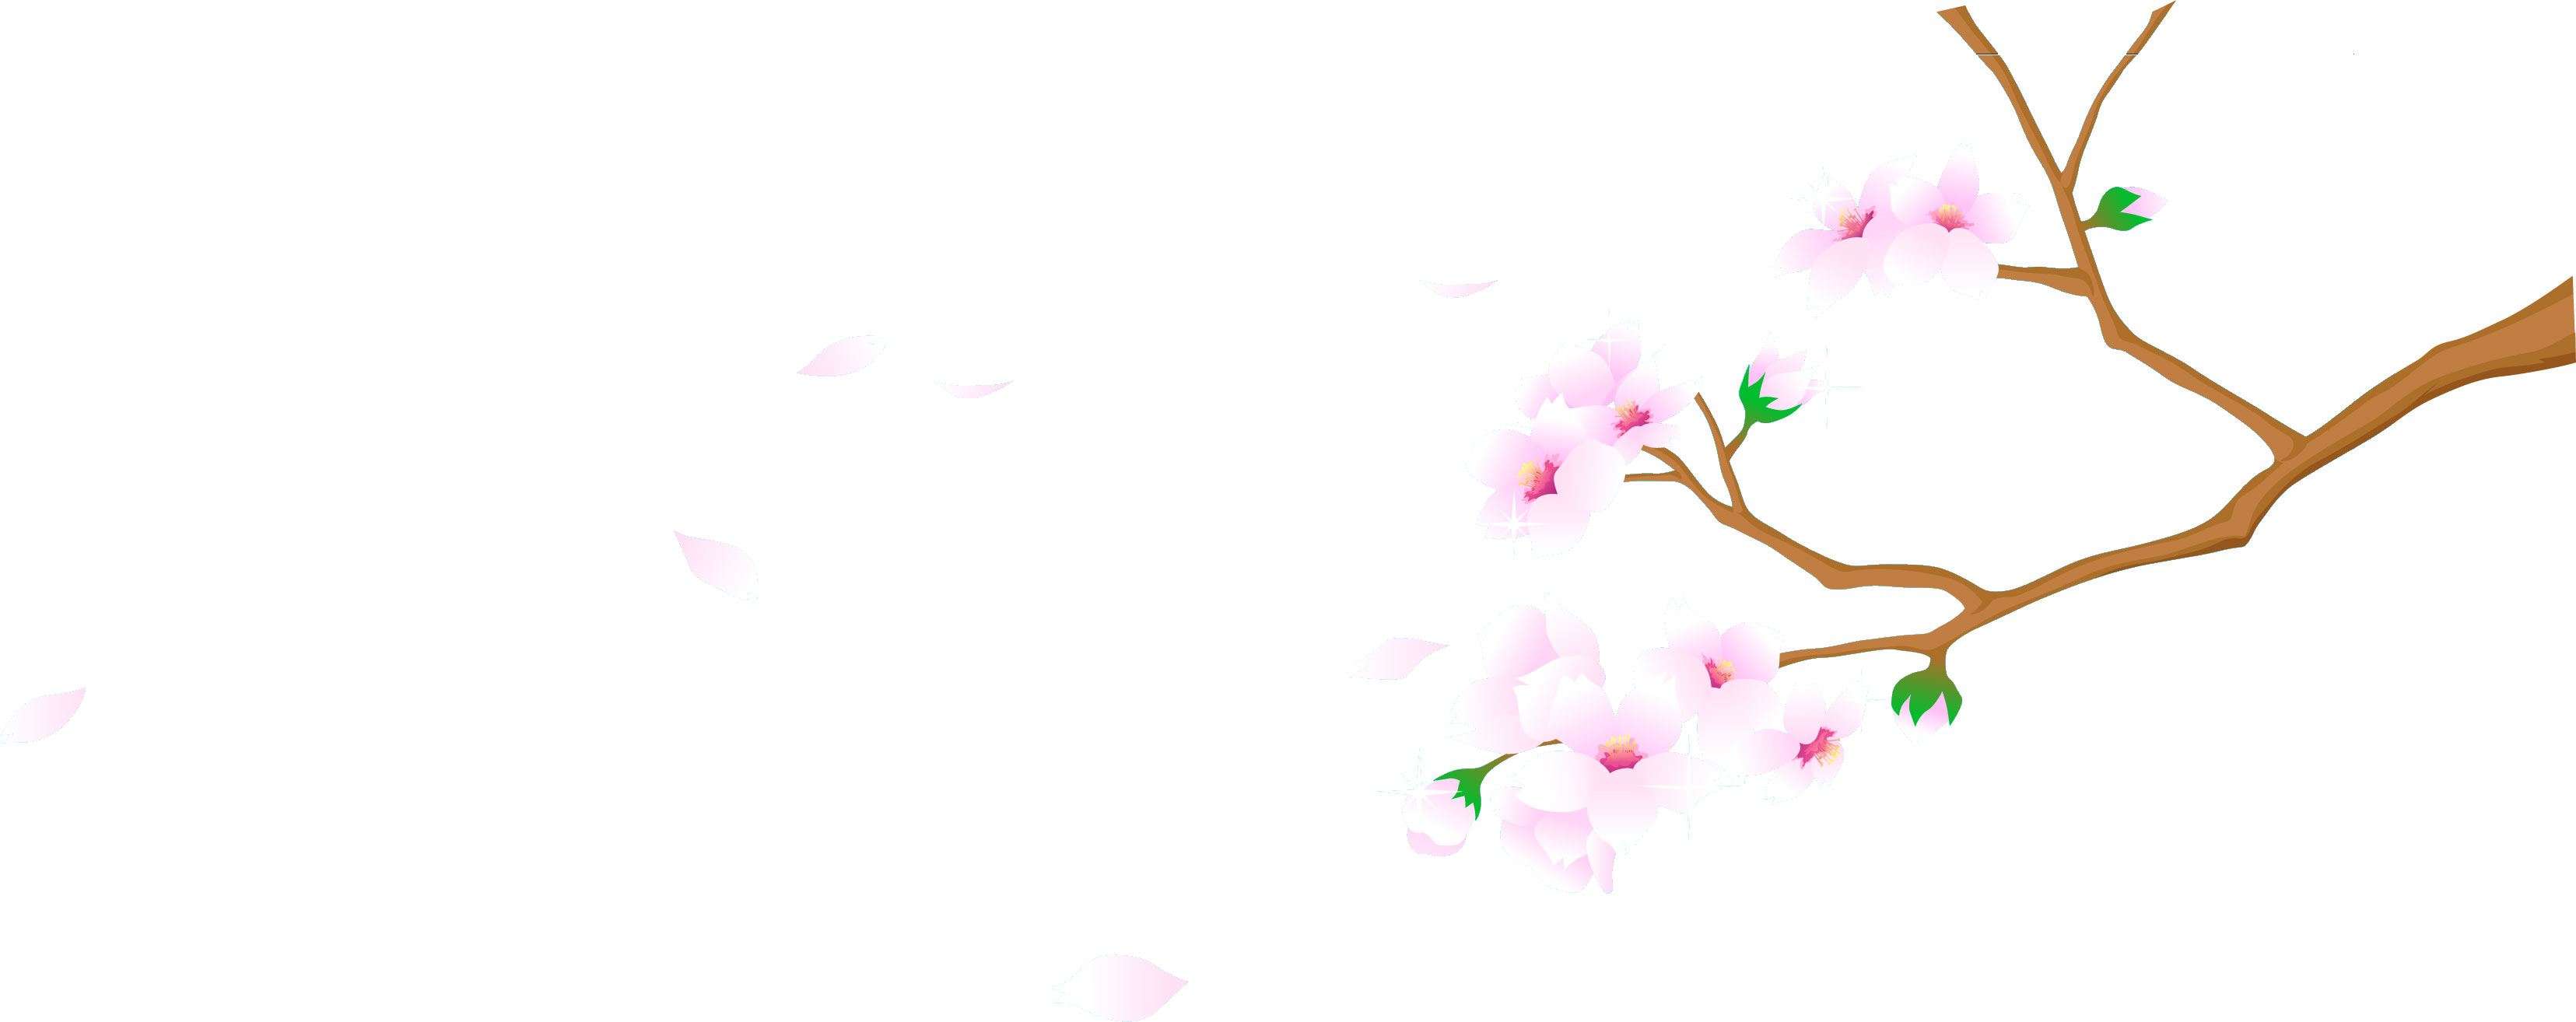 リアルタッチな花のイラスト フリー素材 No 1027 舞い散る桜